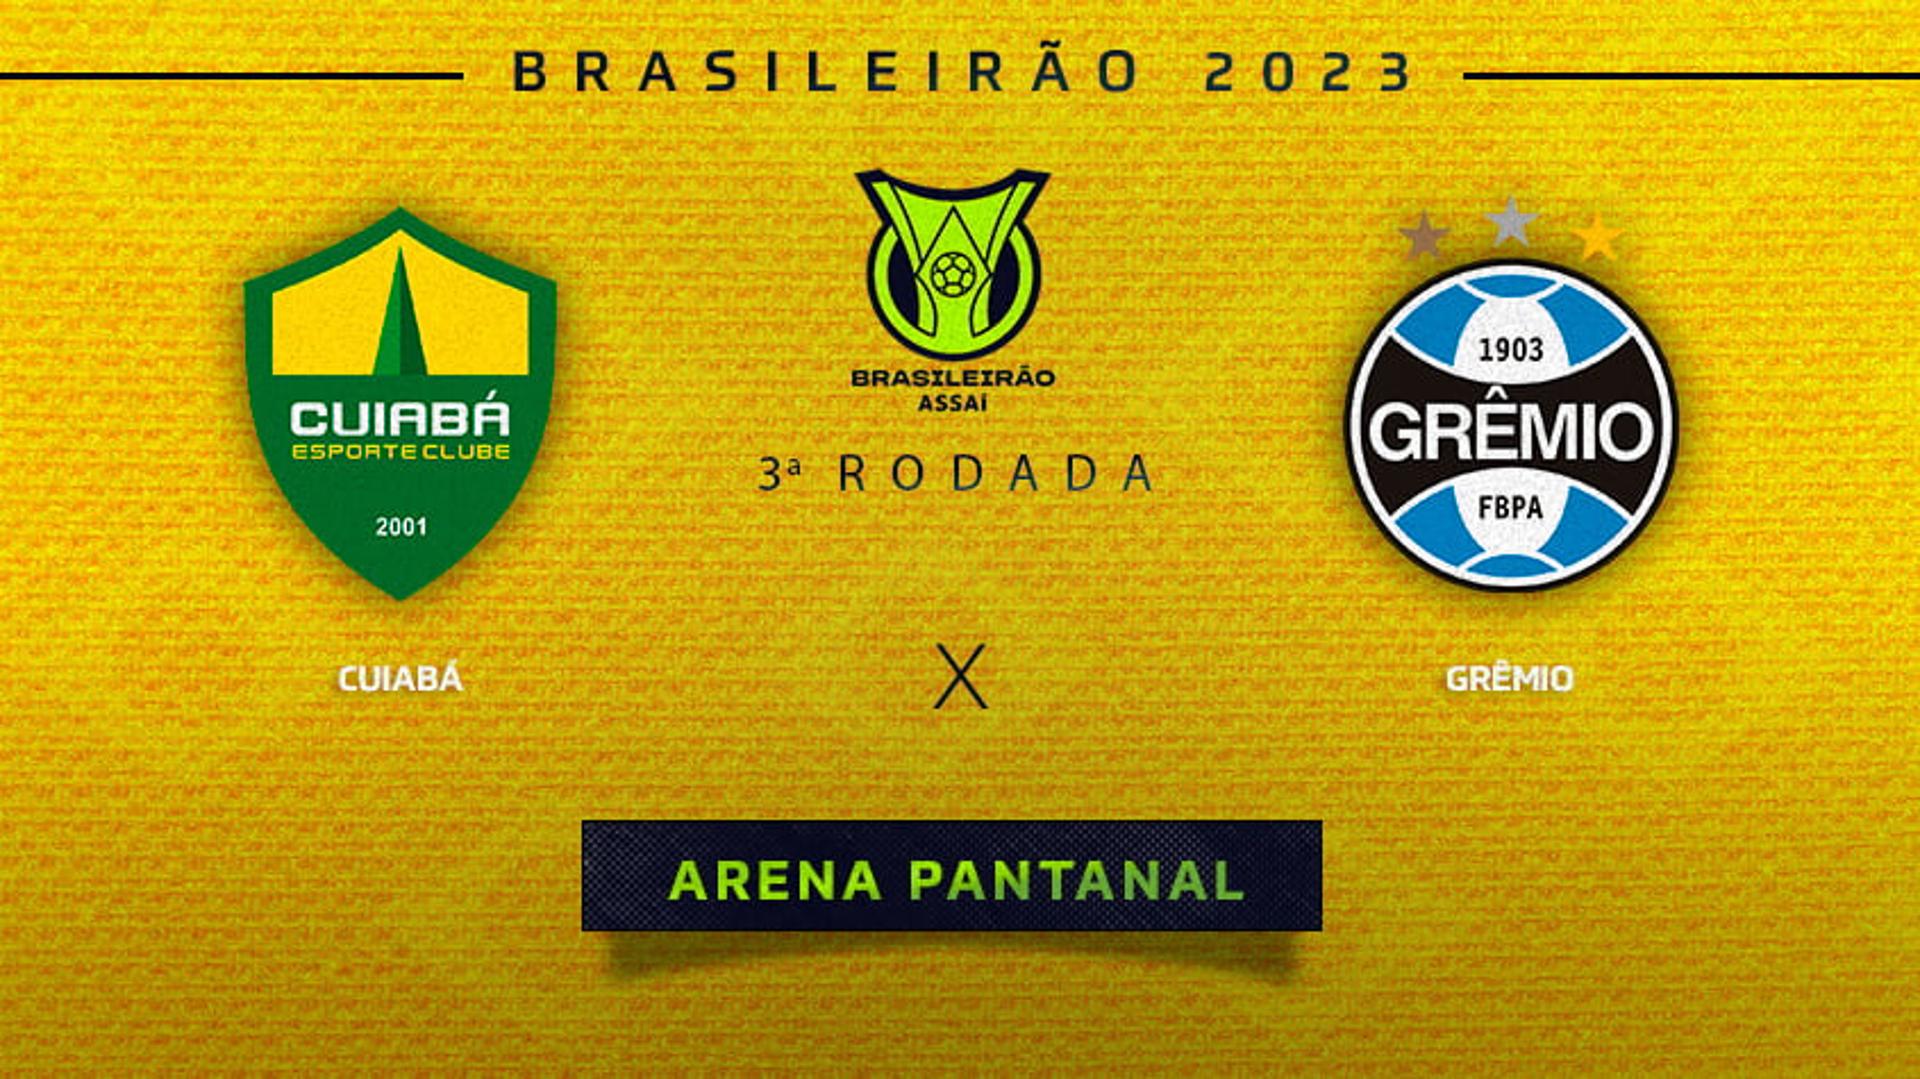 Chamada - Cuiabá x Grêmio